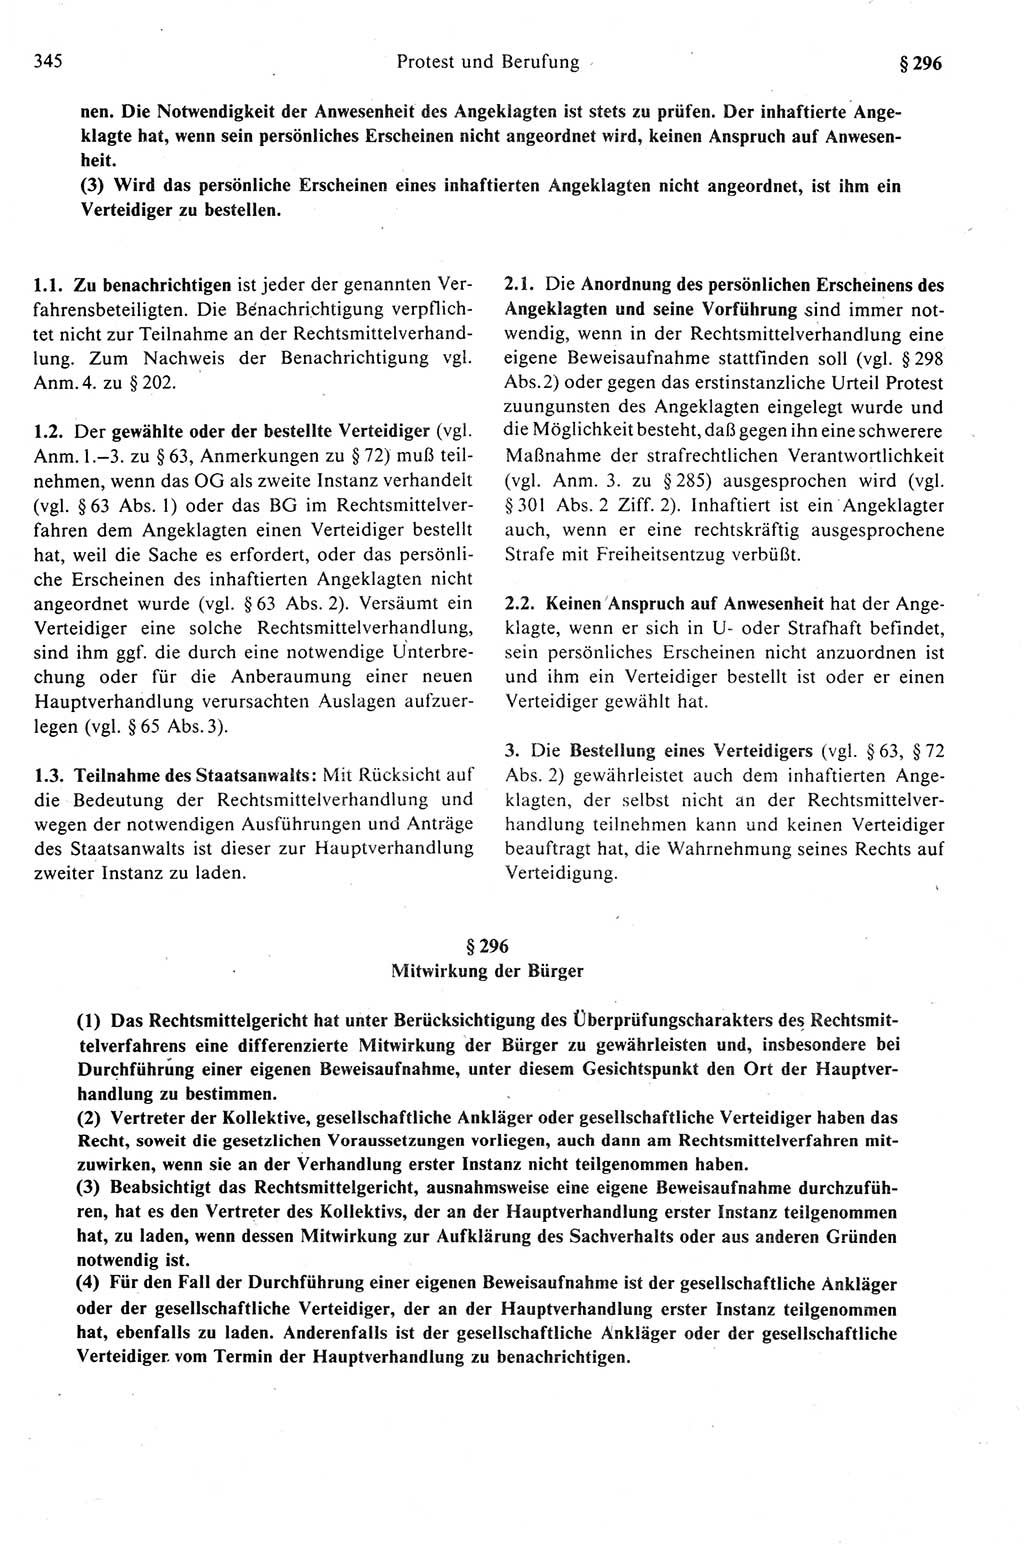 Strafprozeßrecht der DDR (Deutsche Demokratische Republik), Kommentar zur Strafprozeßordnung (StPO) 1989, Seite 345 (Strafprozeßr. DDR Komm. StPO 1989, S. 345)